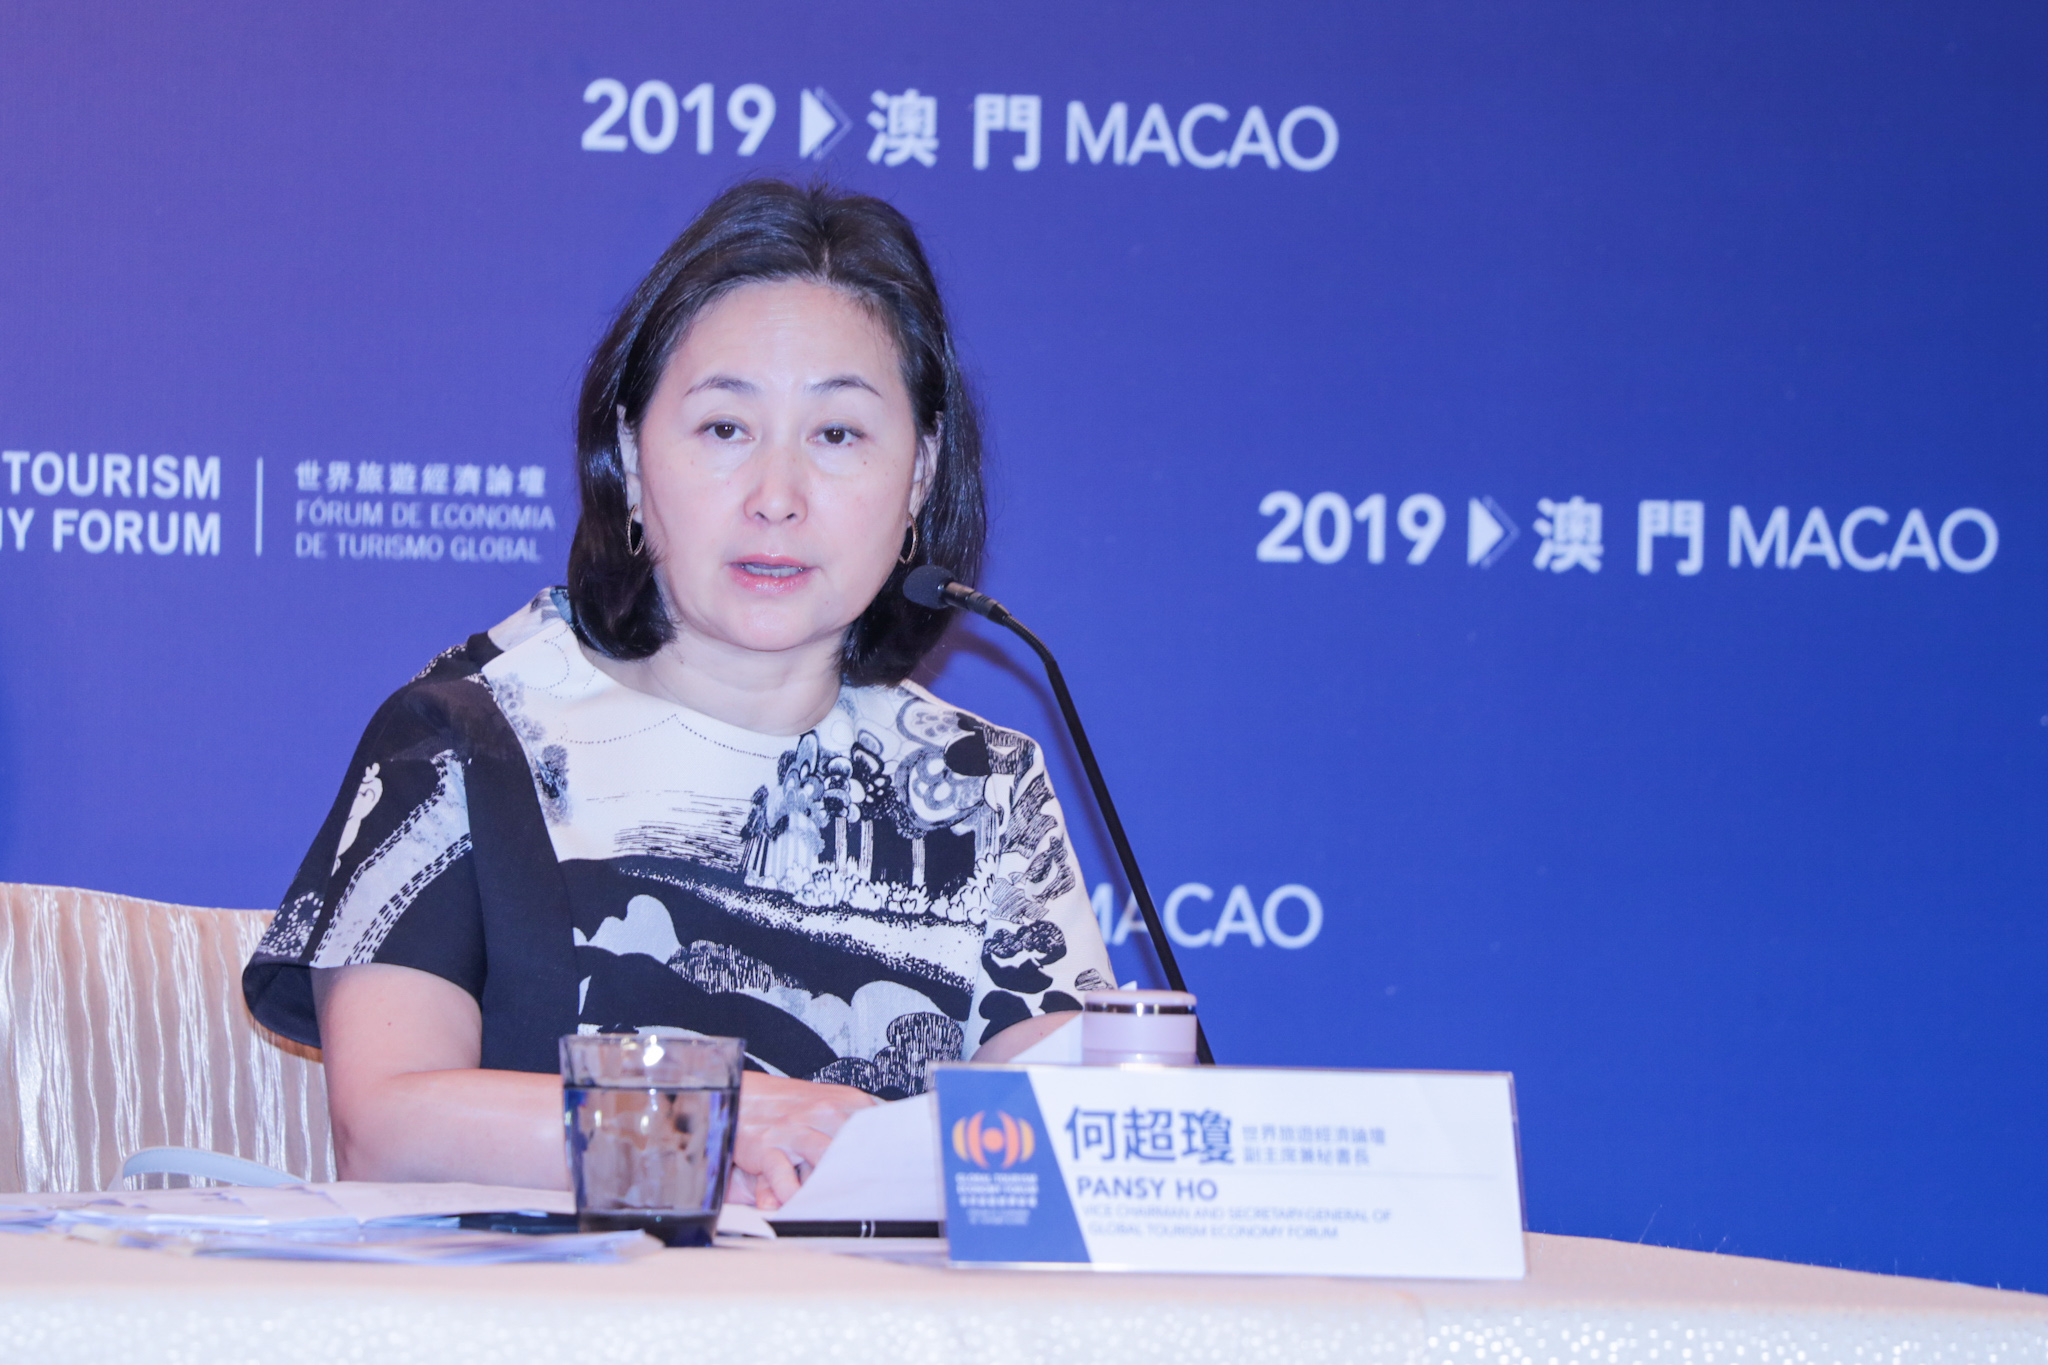 Jogo | Pansy Ho diz que casinos no Brasil têm interesse para indústria de Macau